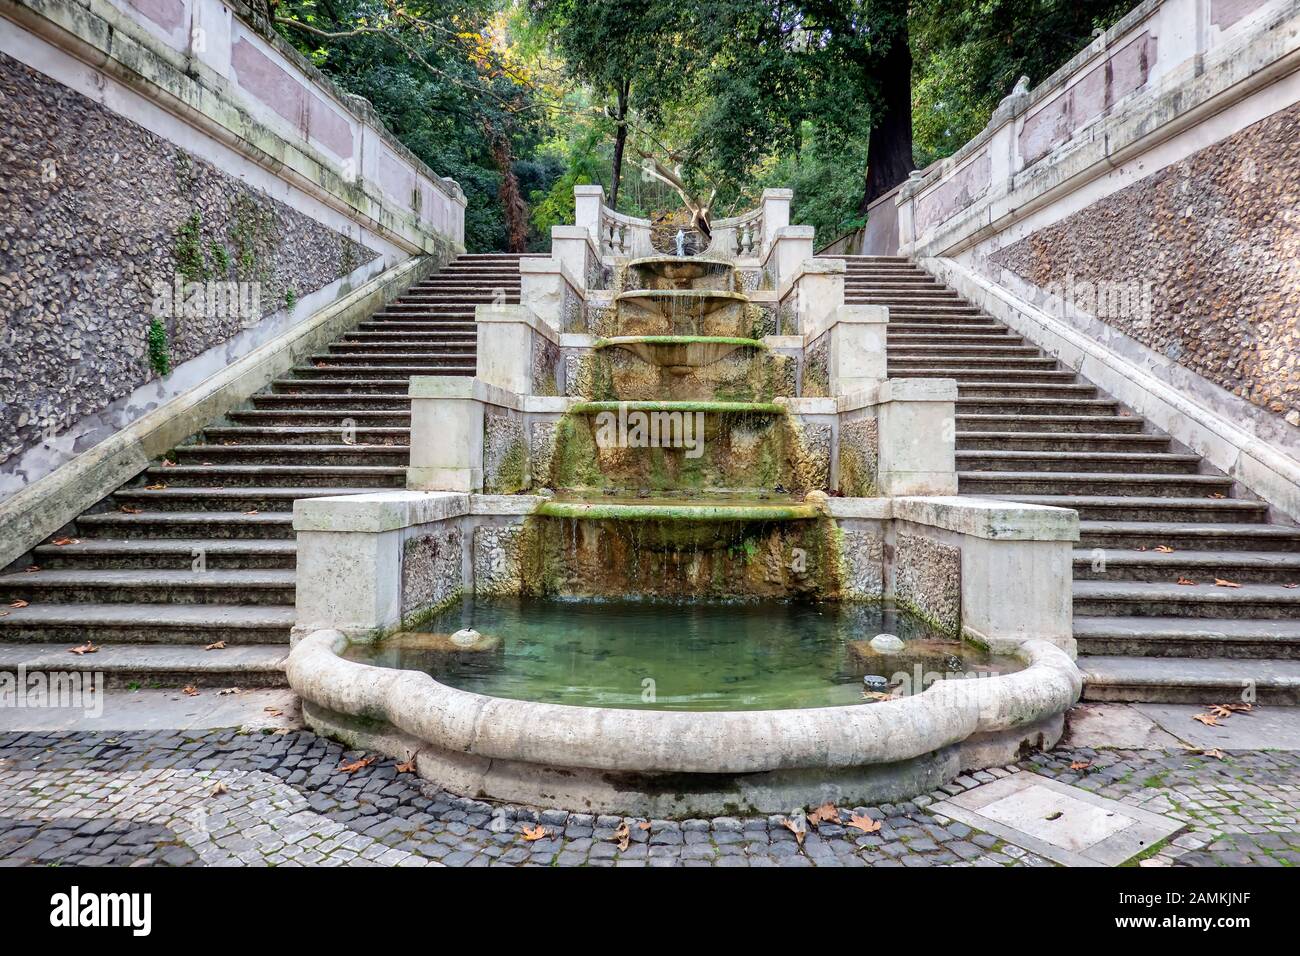 Fontaine cascade dans le jardin botanique de Trastevere, Rome Italie Banque D'Images